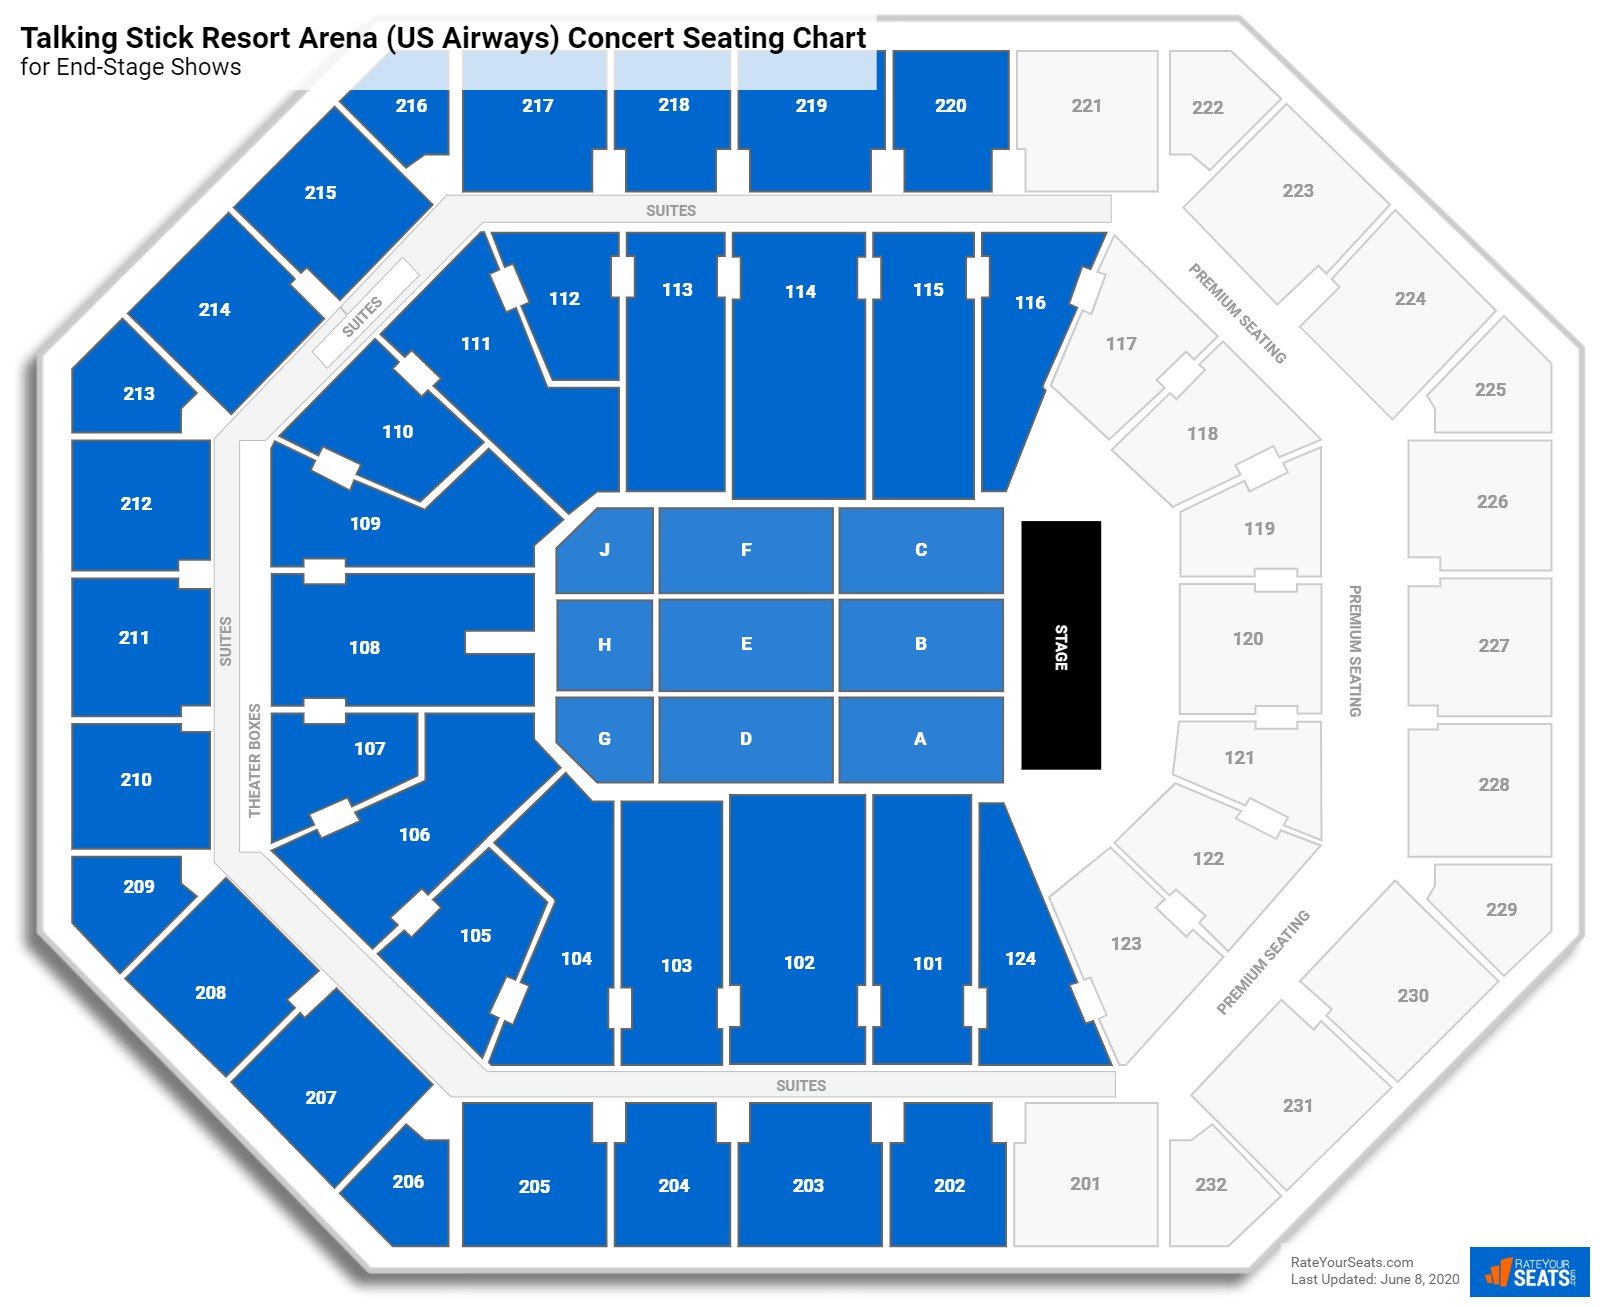 Footprint Center Concert Seating Chart